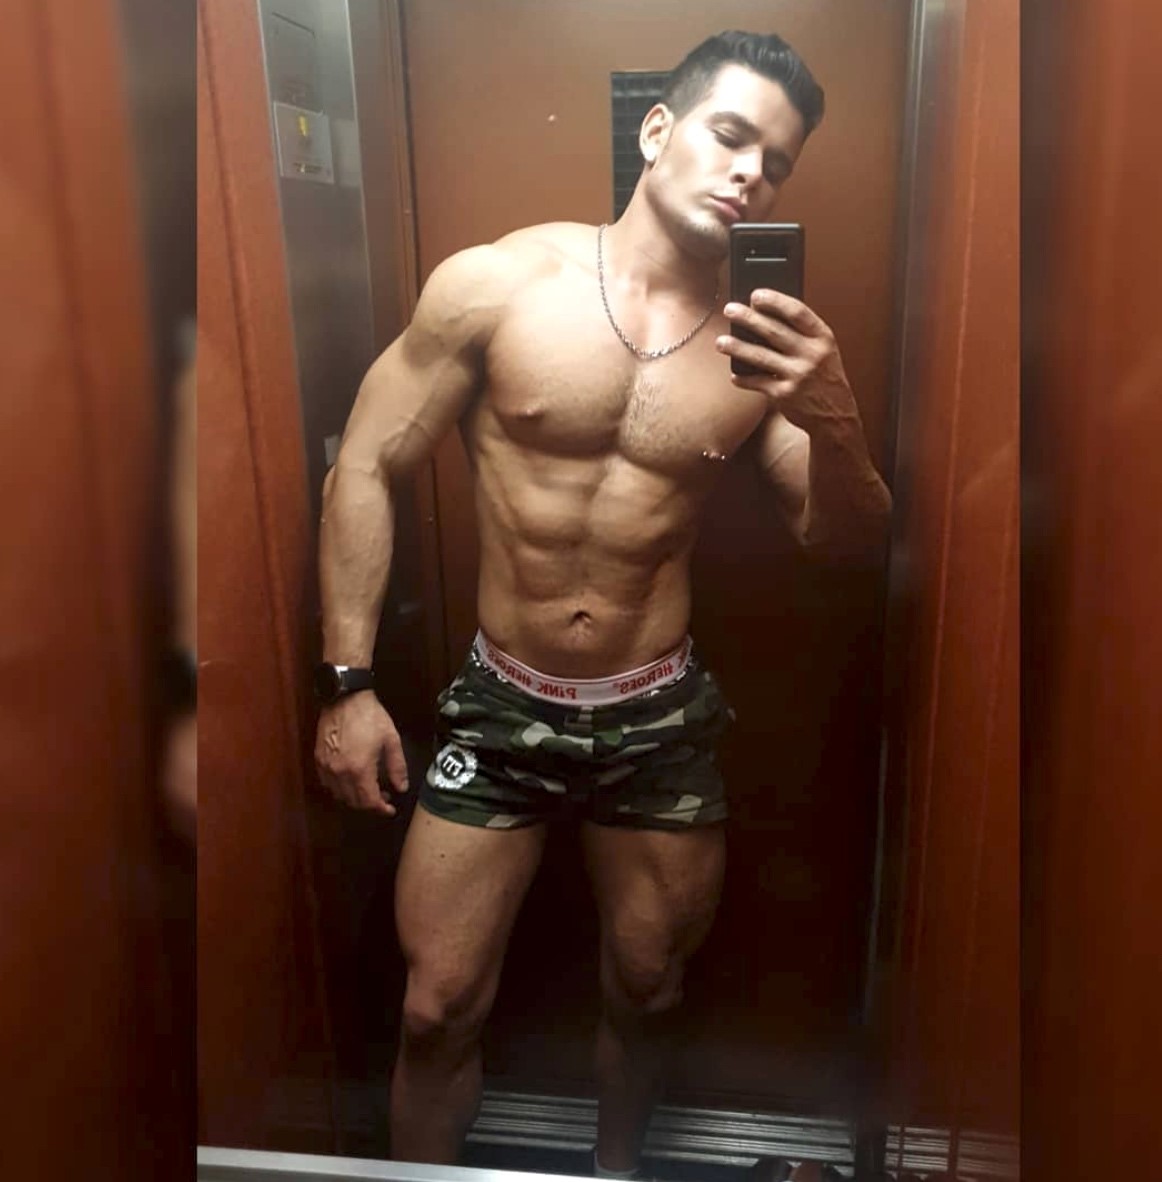 Ator gay Rico Marlon diz que é censurado no Instagram por homofobia